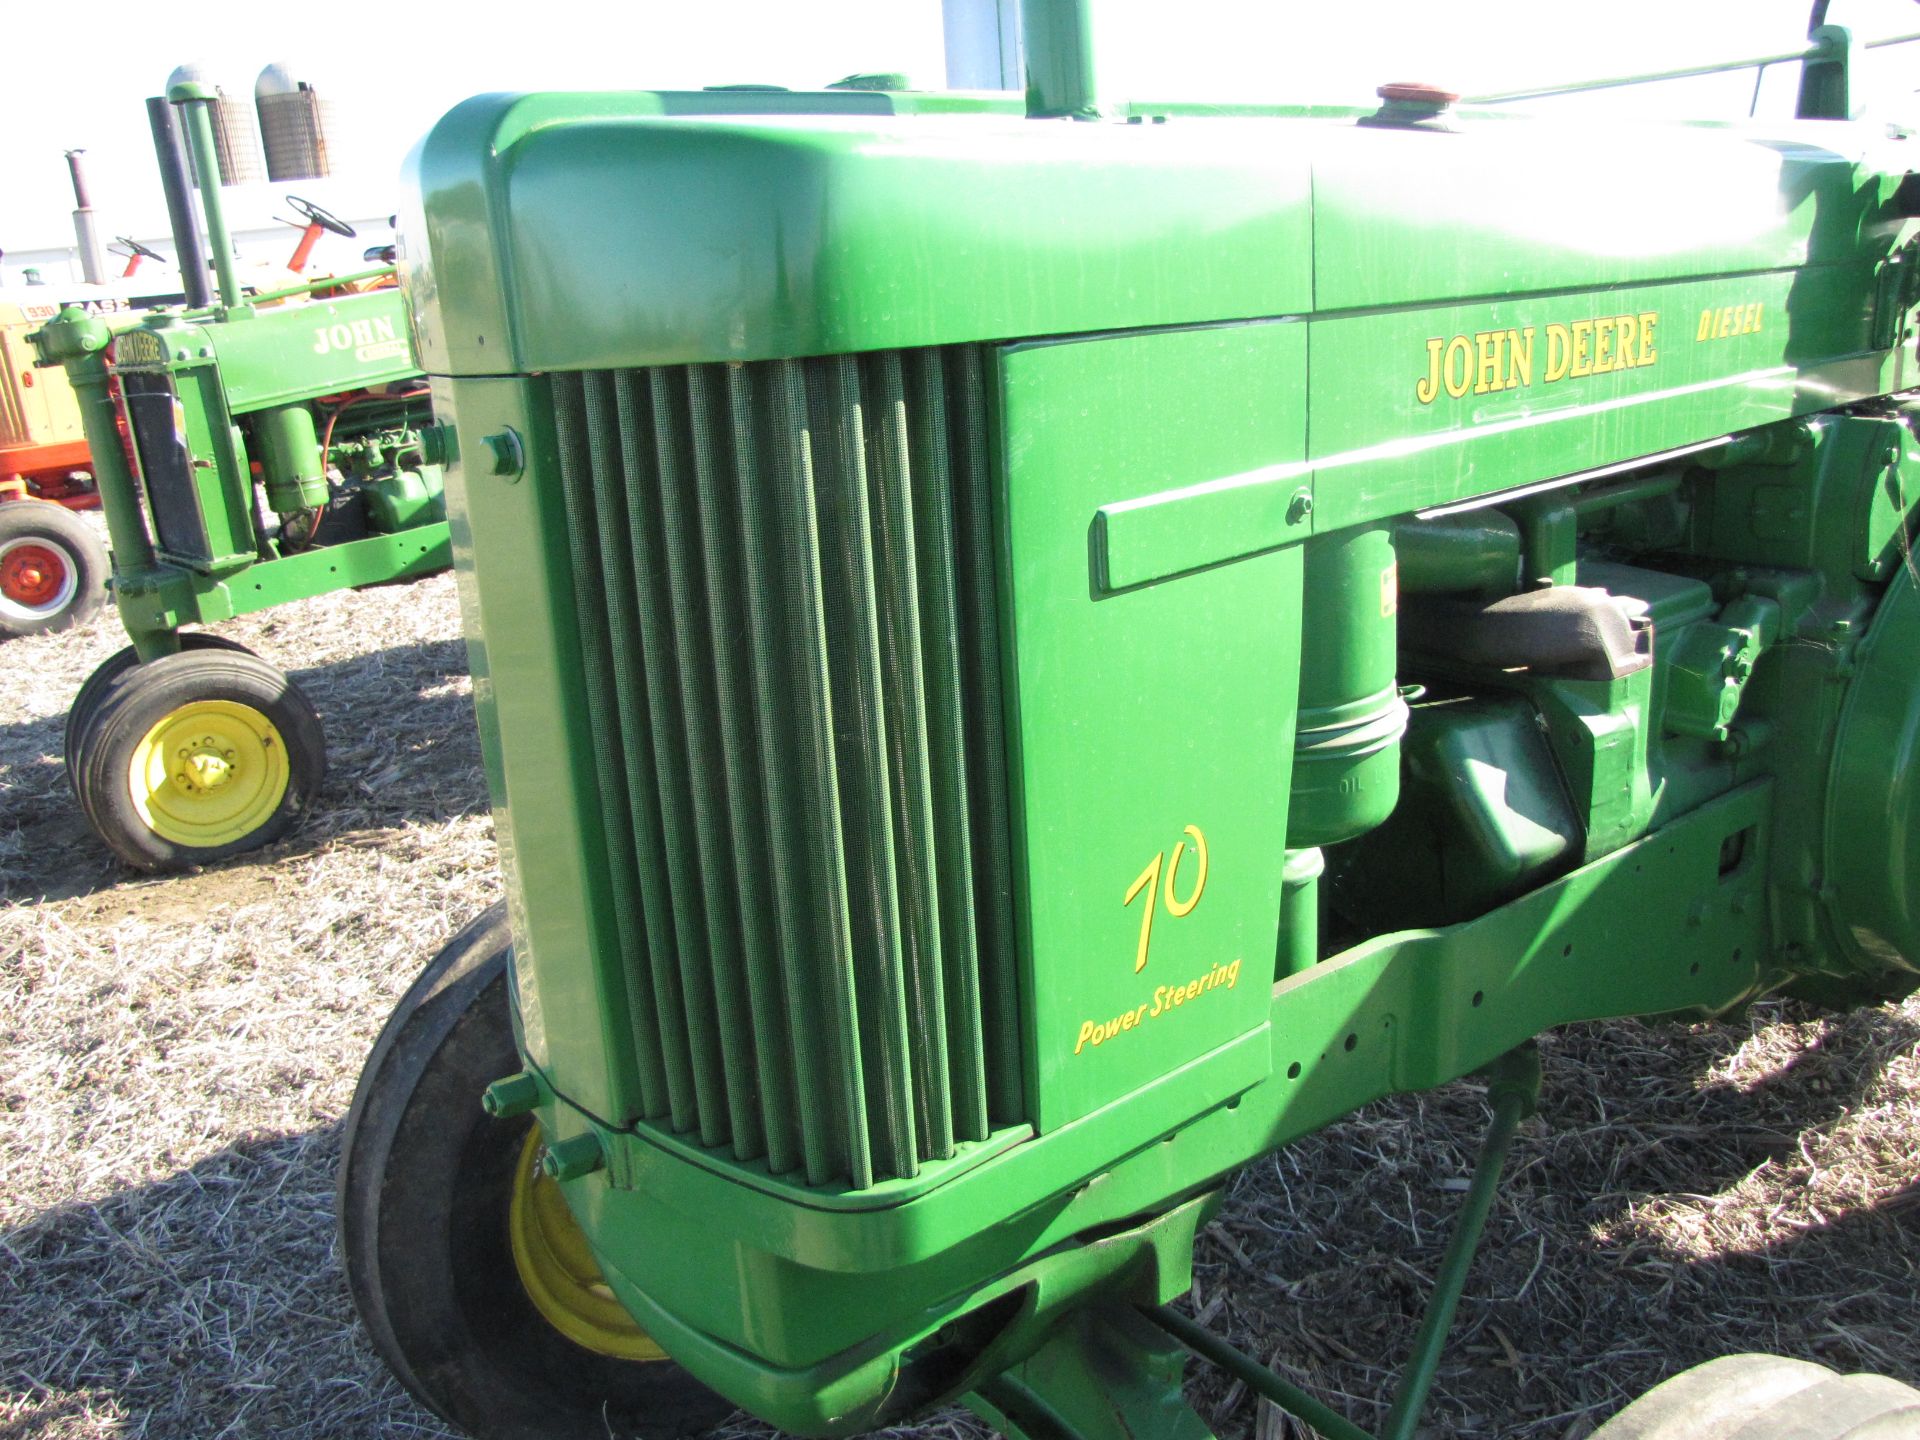 John Deere 70 Tractor - Image 11 of 47